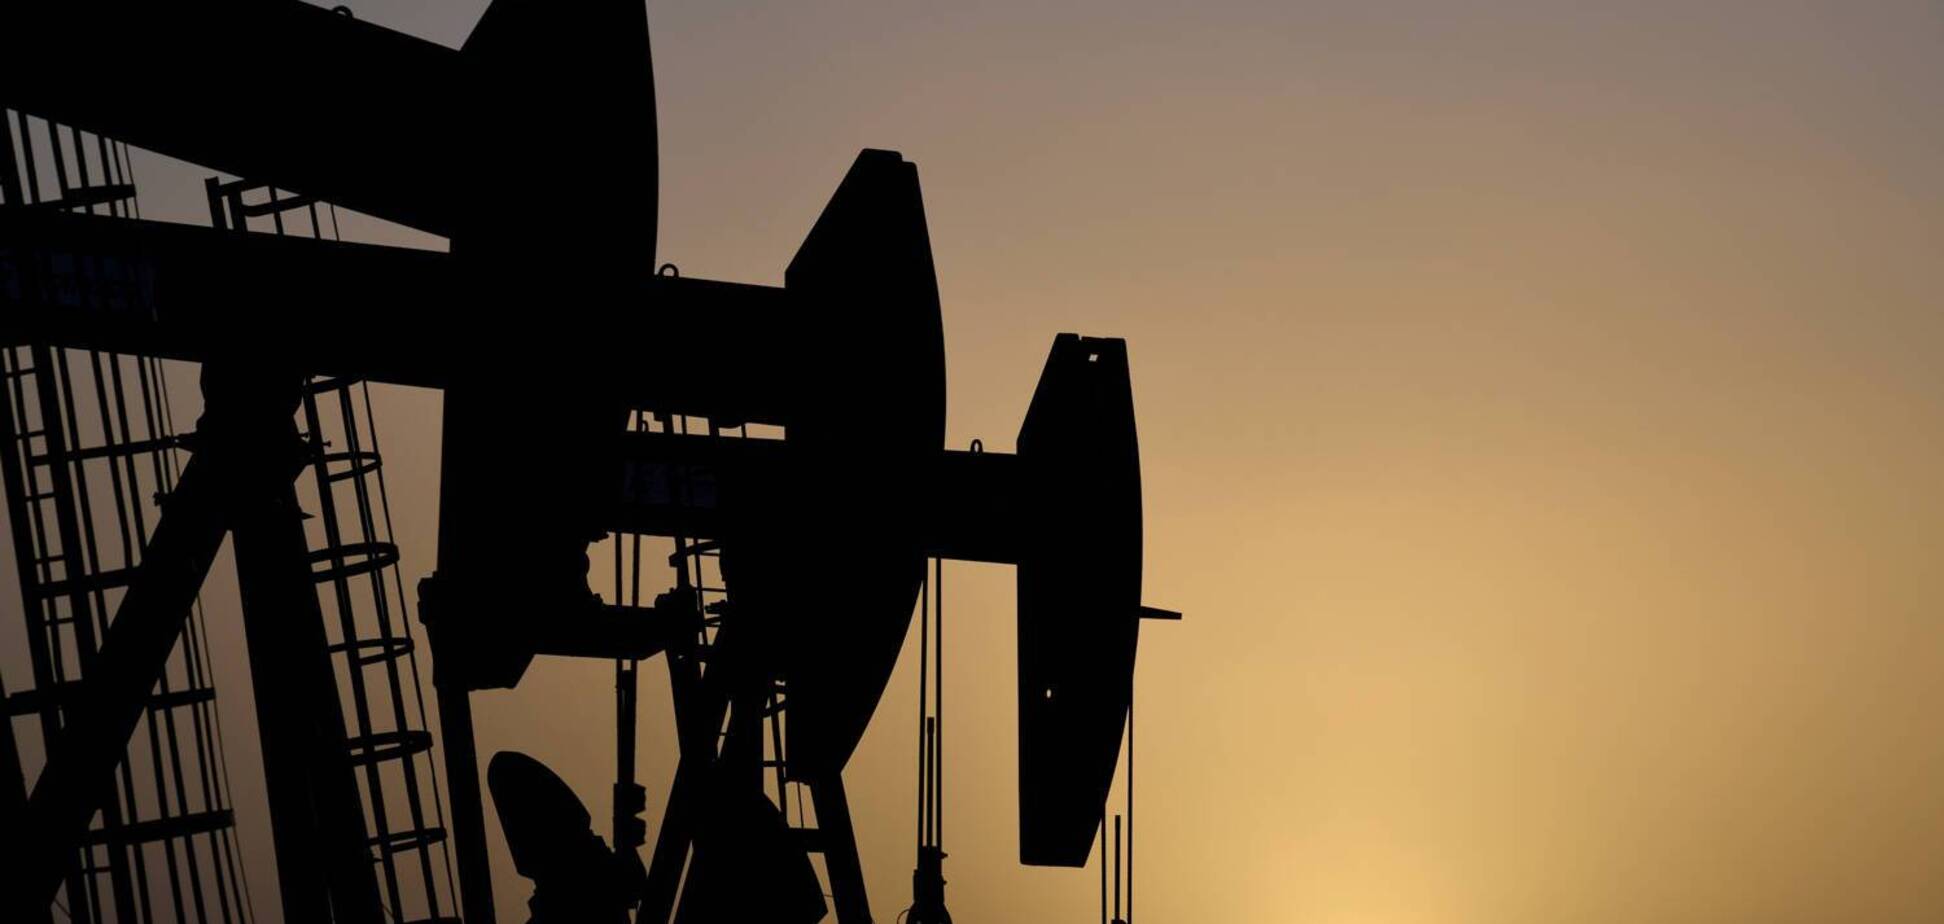 Производители нефти уткнулись в дно сокращений